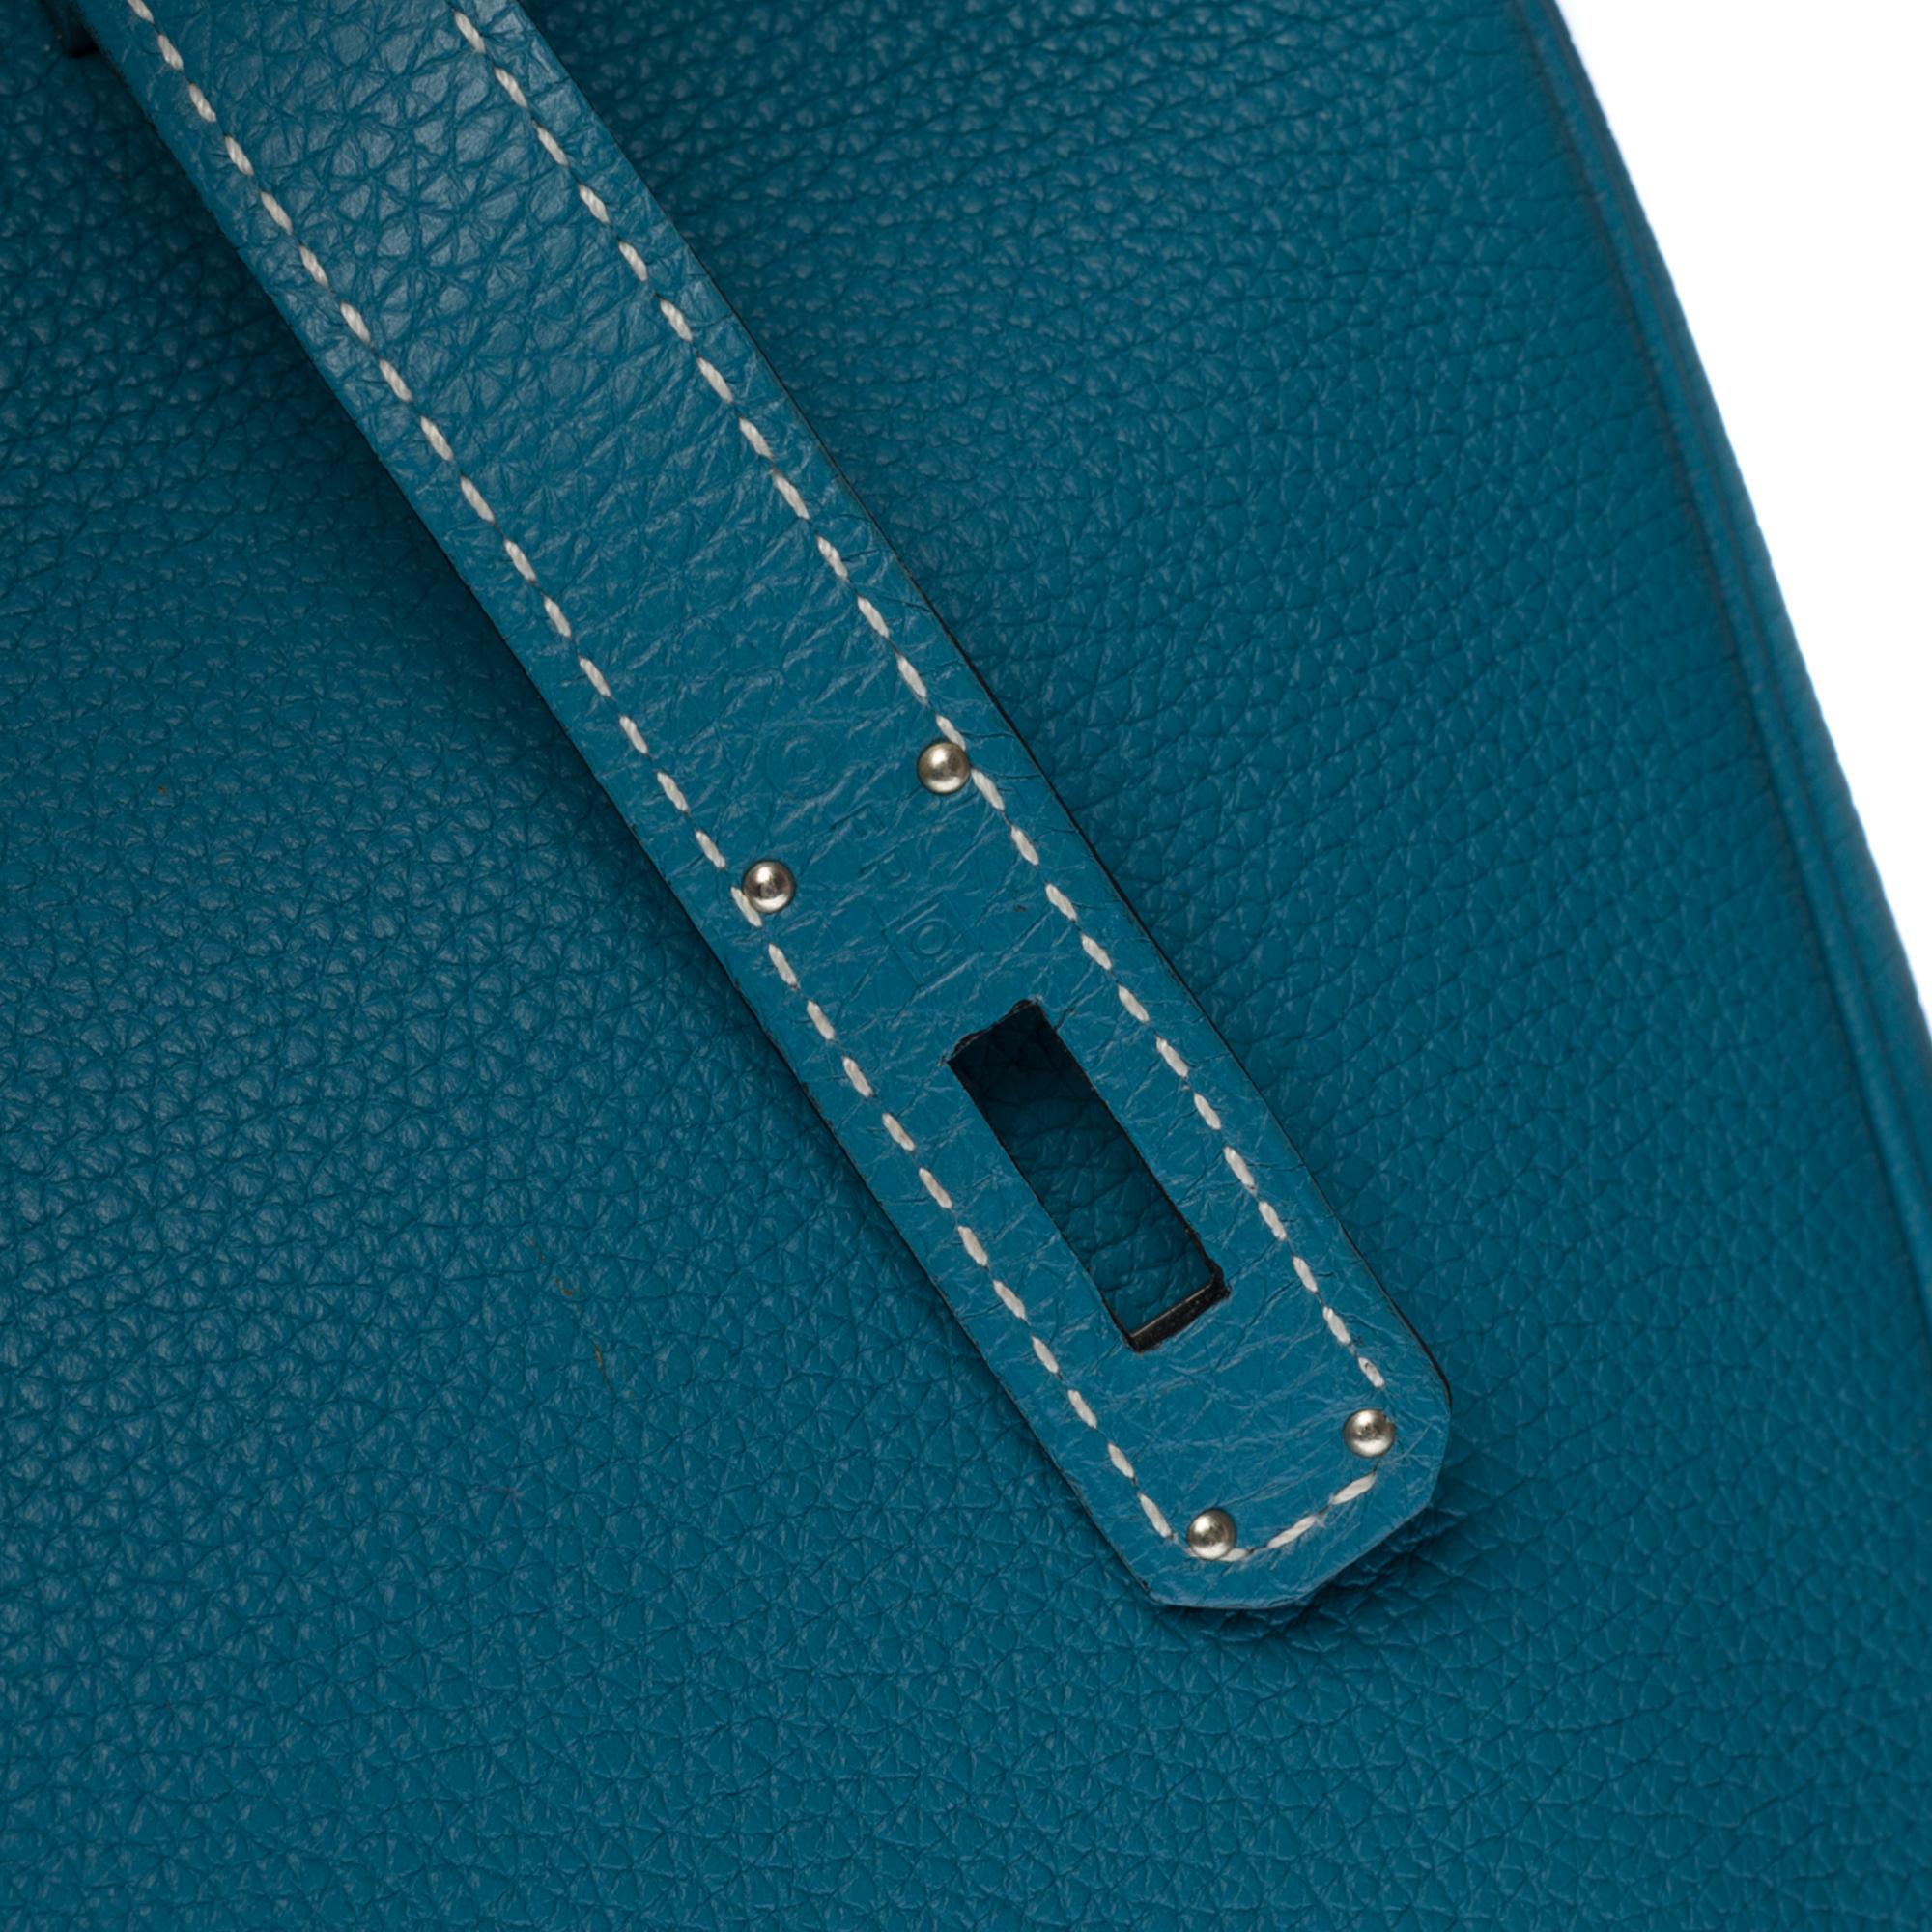 Stunning Hermes Birkin 40cm handbag in Blue Pétrole Togo leather, SHW 2